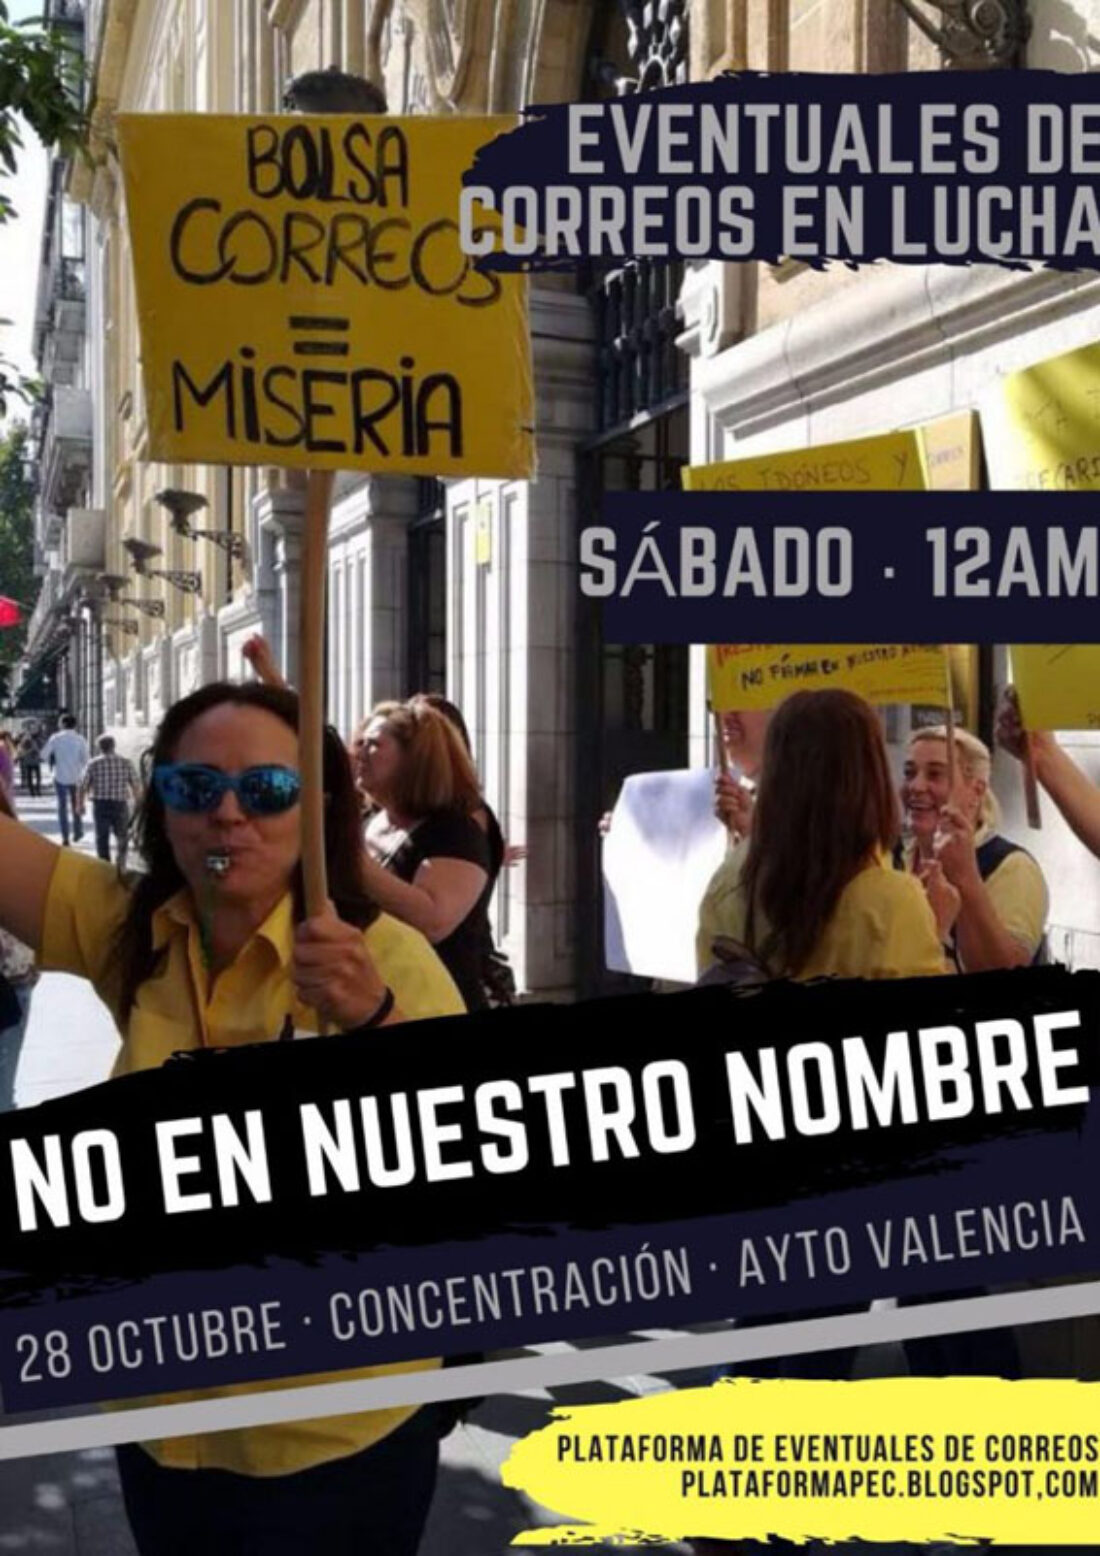 28-o València: Concentración-protesta de Eventuales de Correos